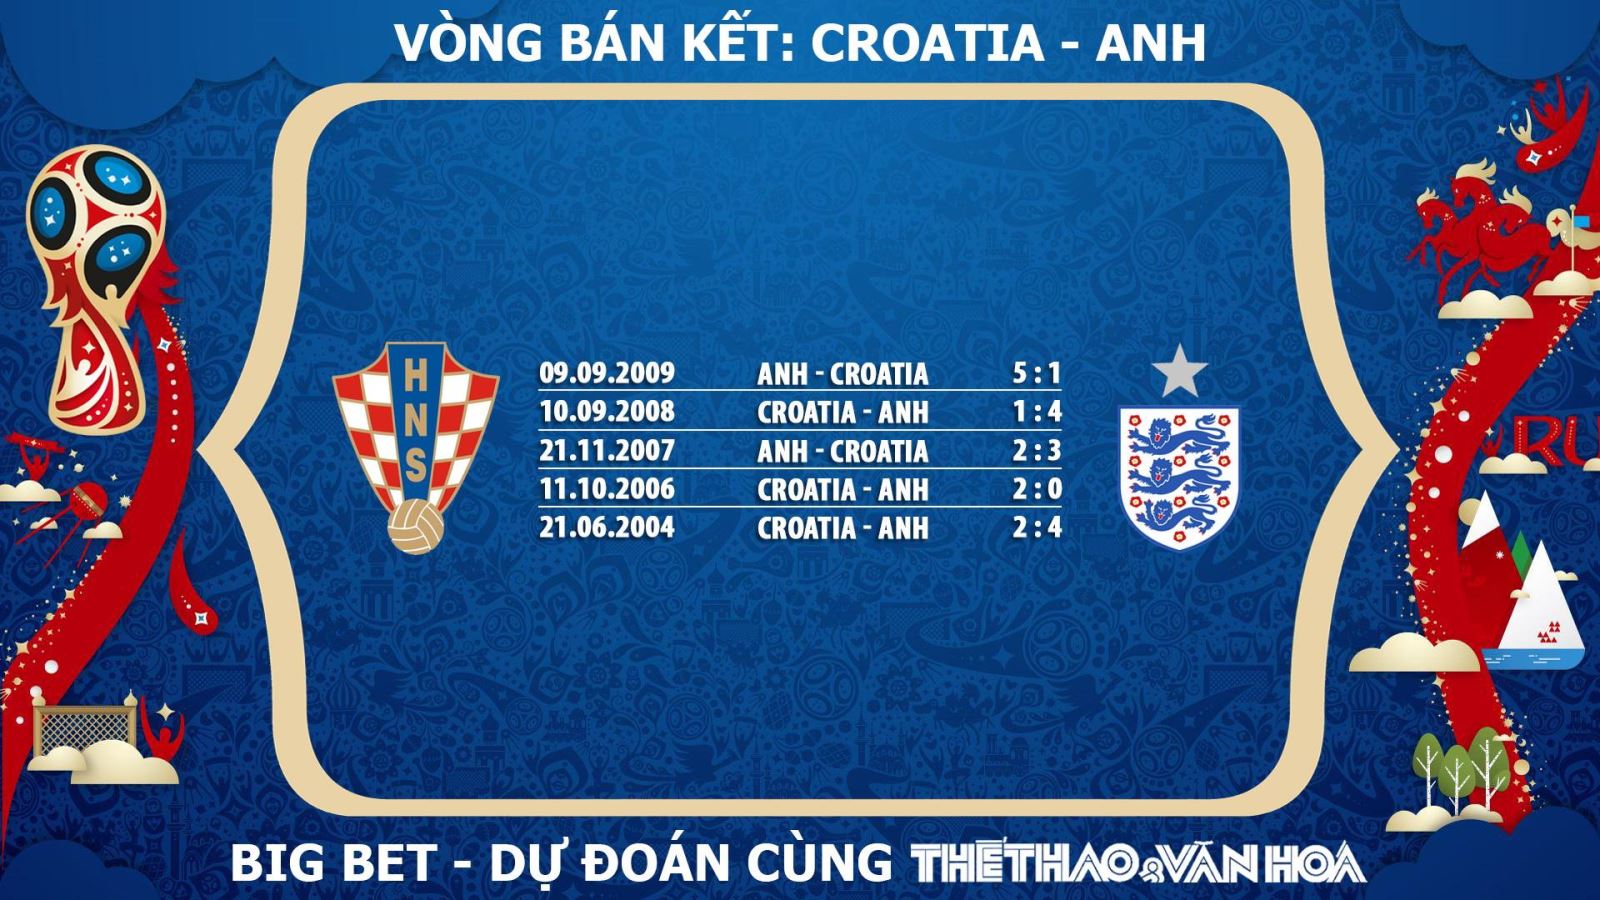 Nhận định bóng đá bán kết World Cup 2018: Croatia - Anh (1h00 ngày 12/7, trực tiếp VTV3 & VTV3 HD) 